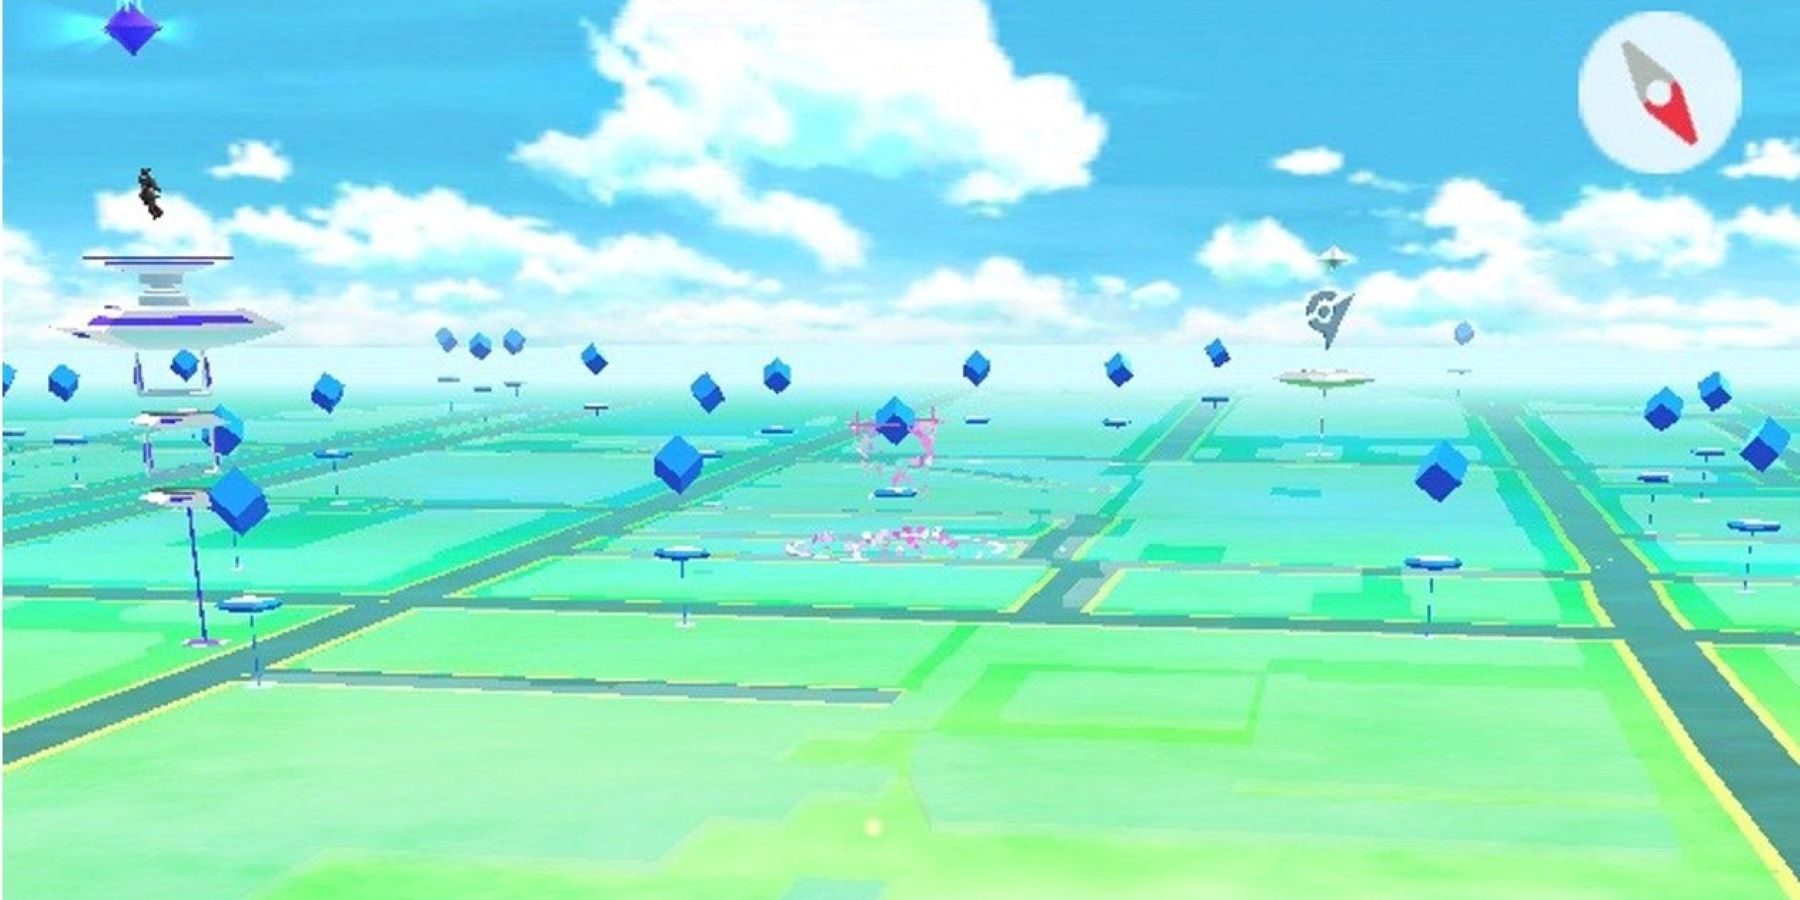 Скриншот Pokemon GO с множеством PokeStops и двумя видимыми тренажерными залами.